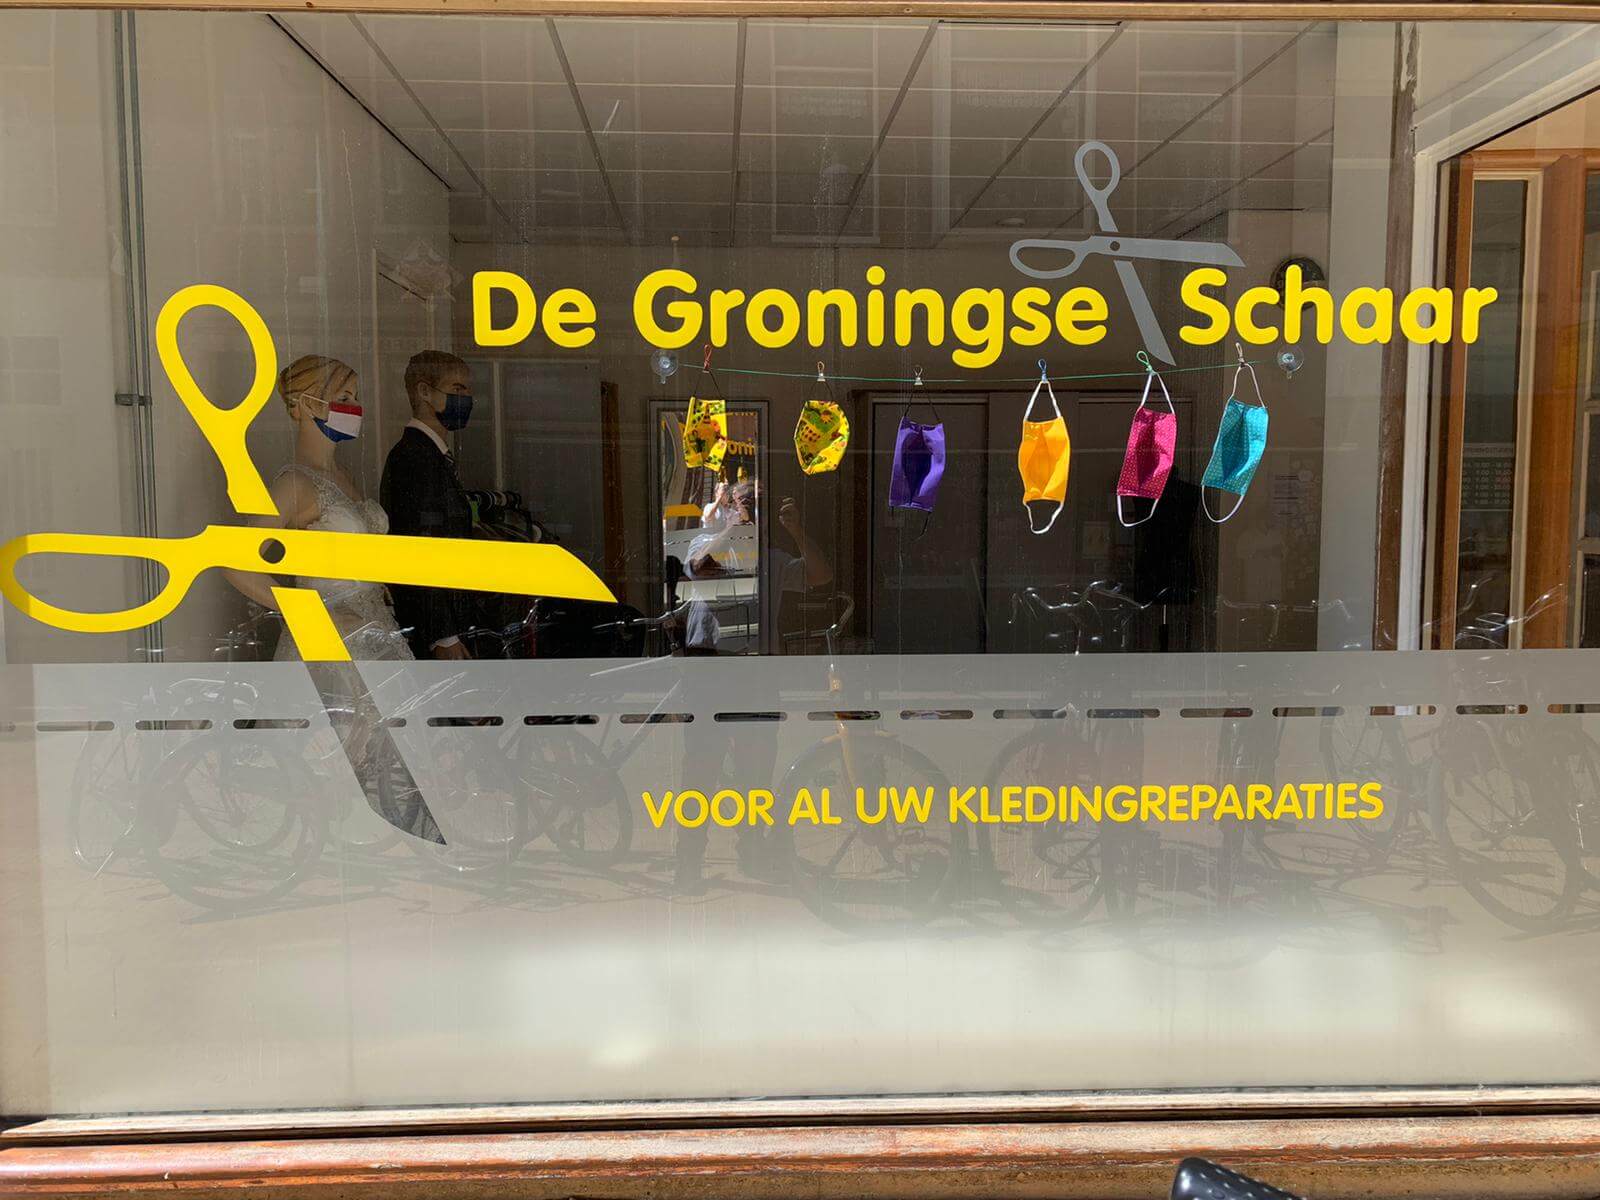 Goedkope mondkapjes kopen Groningen - Op maat gemaakt door De Groningse Schaar aan de Steentilstraat 12-14 in Groningen